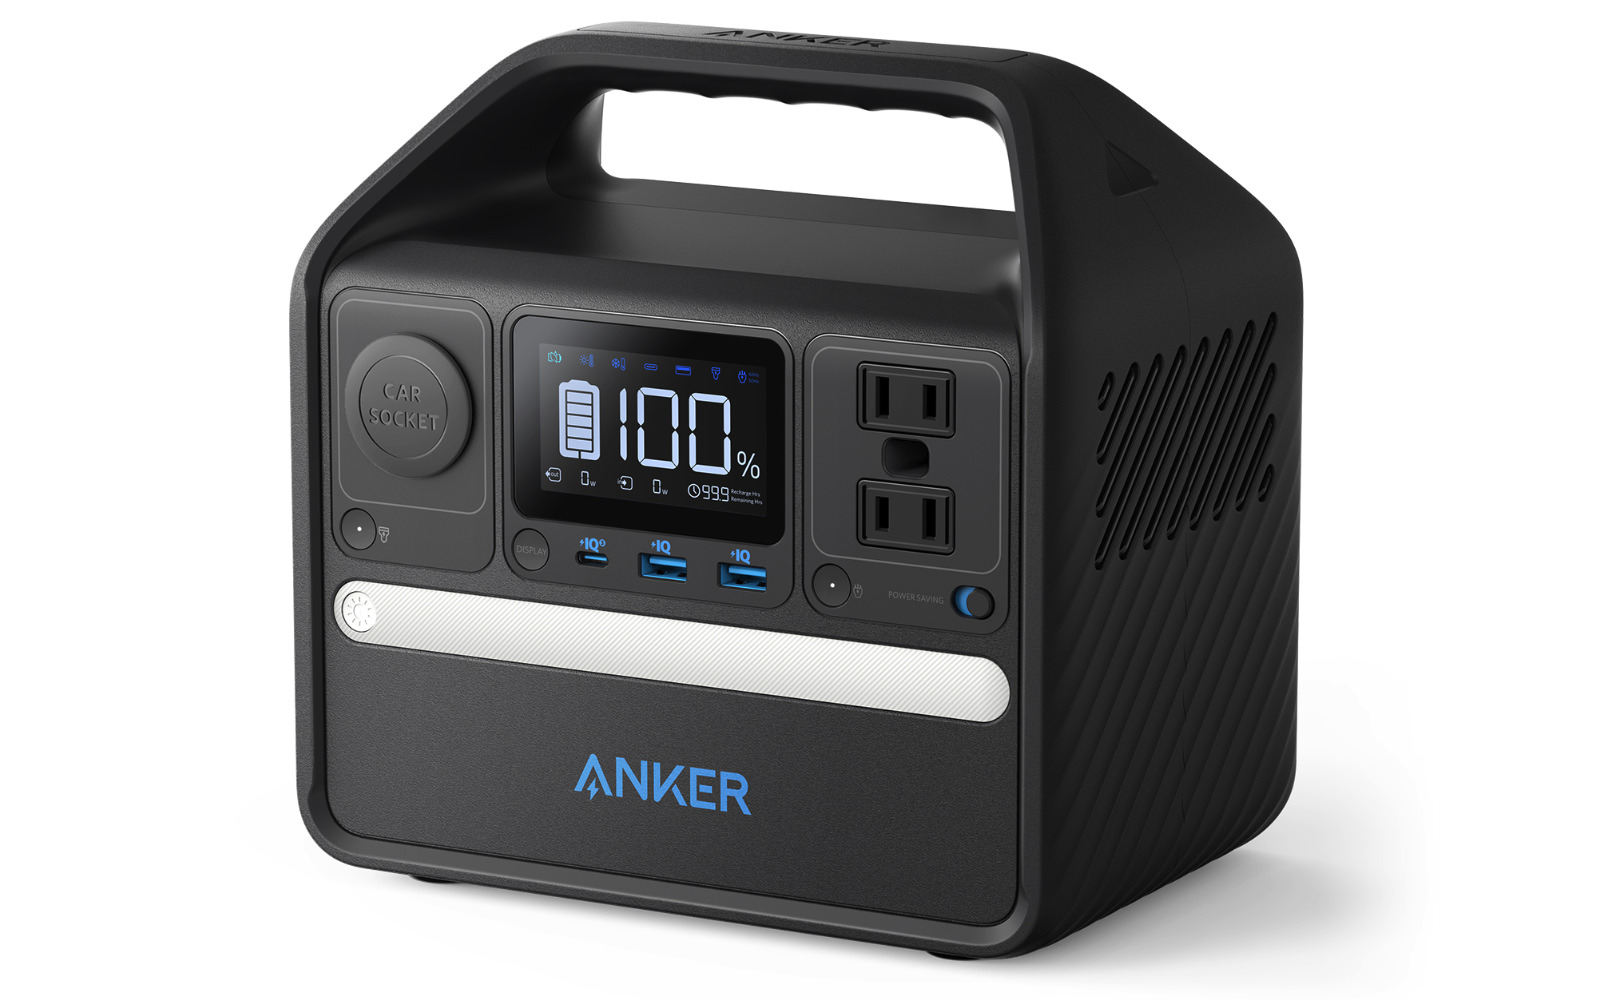 Anker-521-Portable-Power-Station-1.jpg